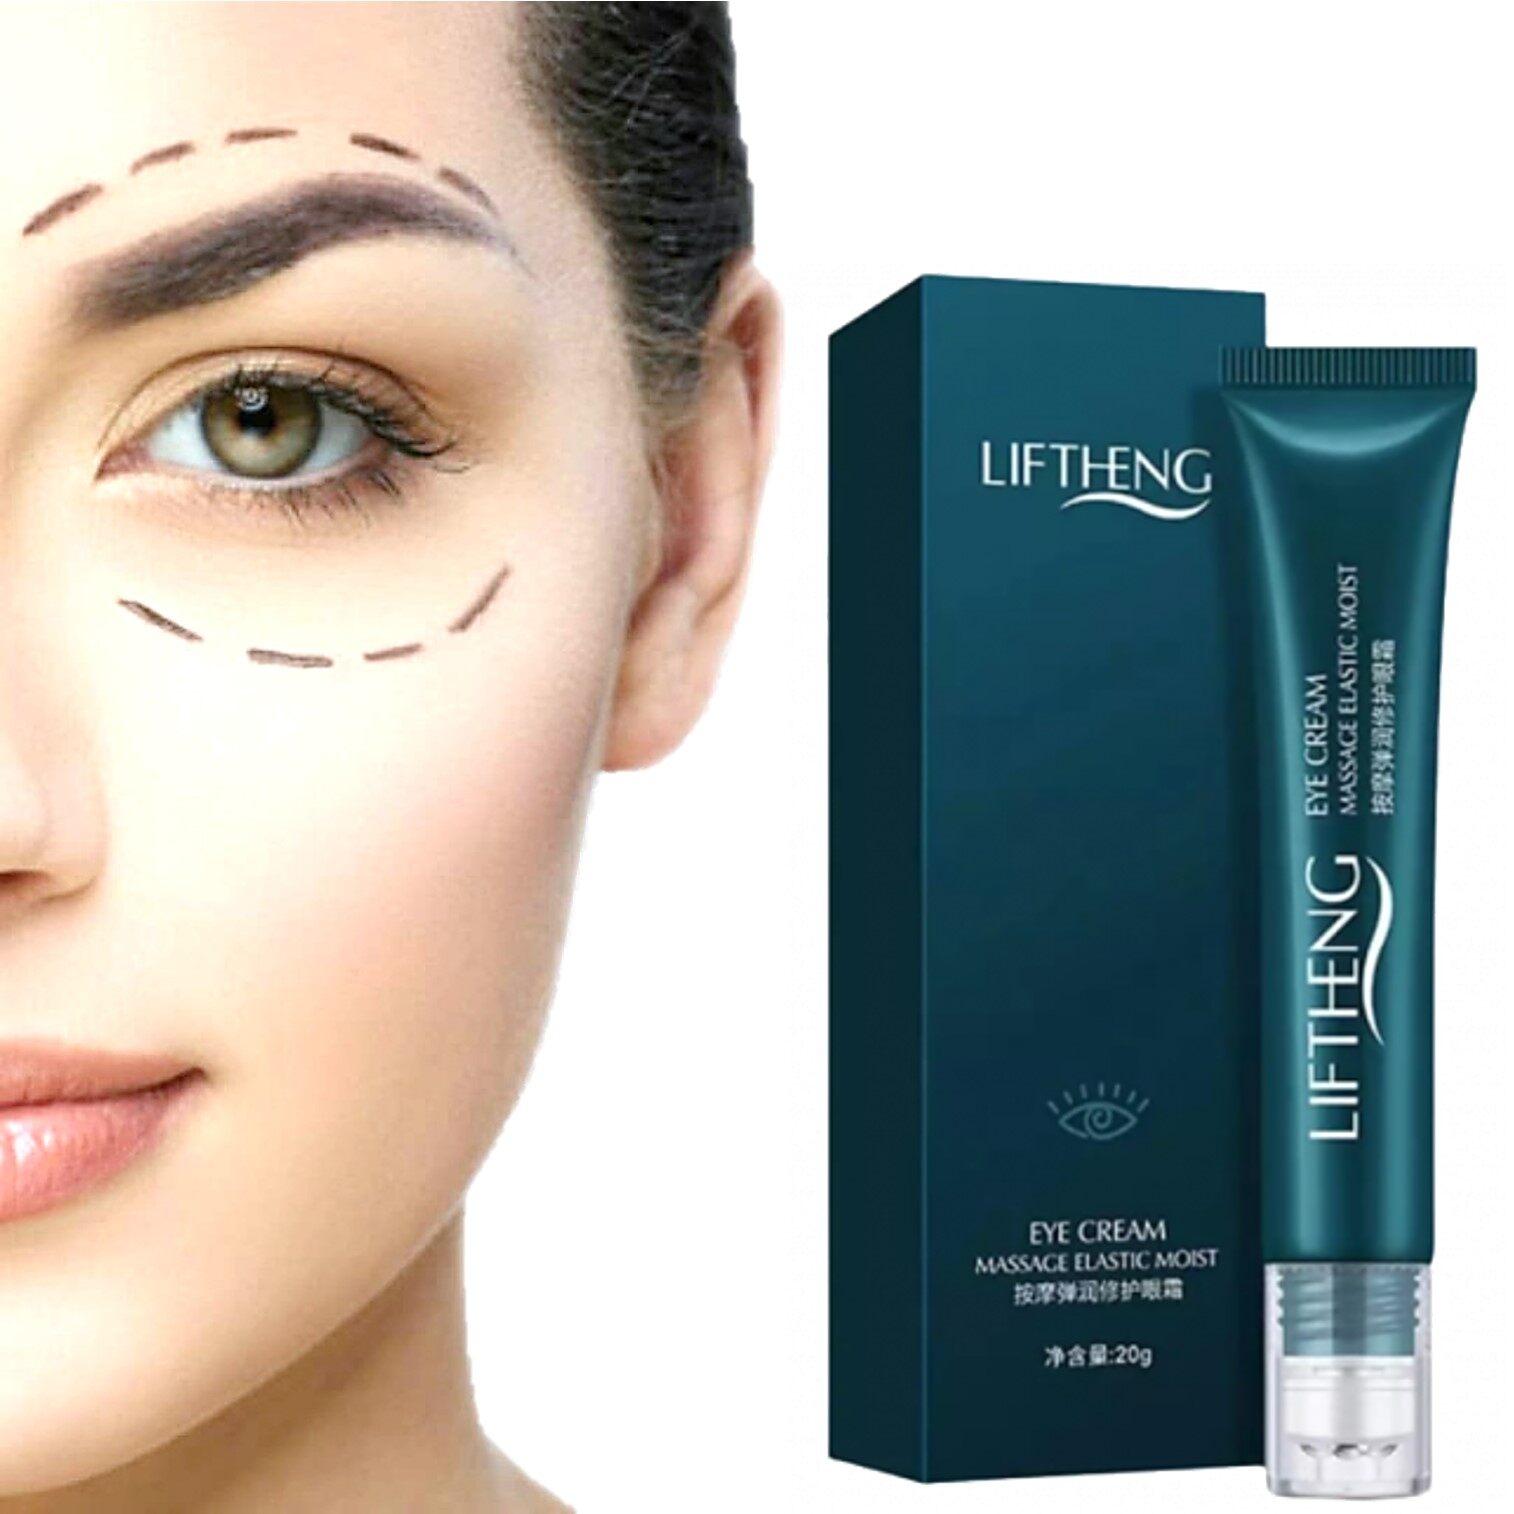 Liftheng Eye Cream Massage Elastic Moist 20g  อายครีมบำรุงและแก้ทุกปัญหารอบดวงตาสูตรพิเศษจากต่างประเทศ | Lazada.co.th